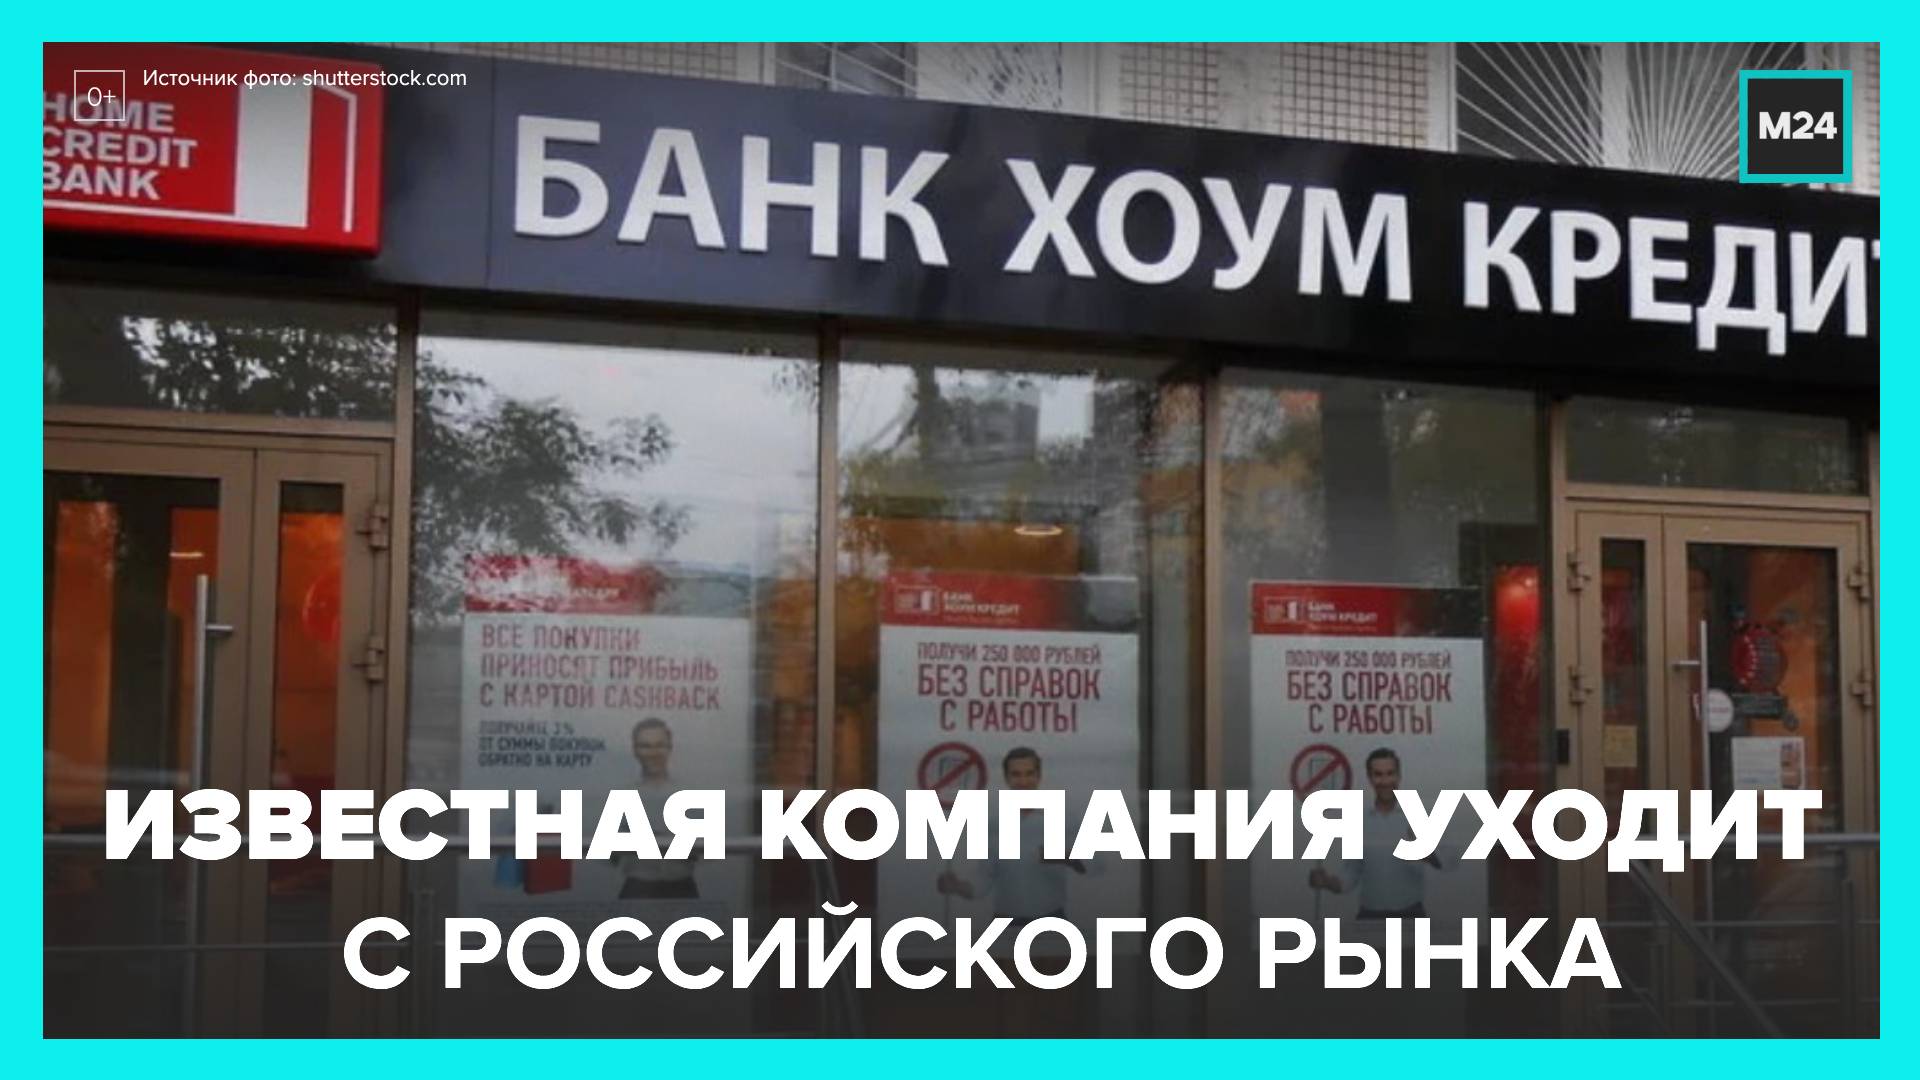 Белорусские банки под санкциями. Хоум кредит уходит из России. Сделка по продаже российских активов Sylvamo Corporation завершена.